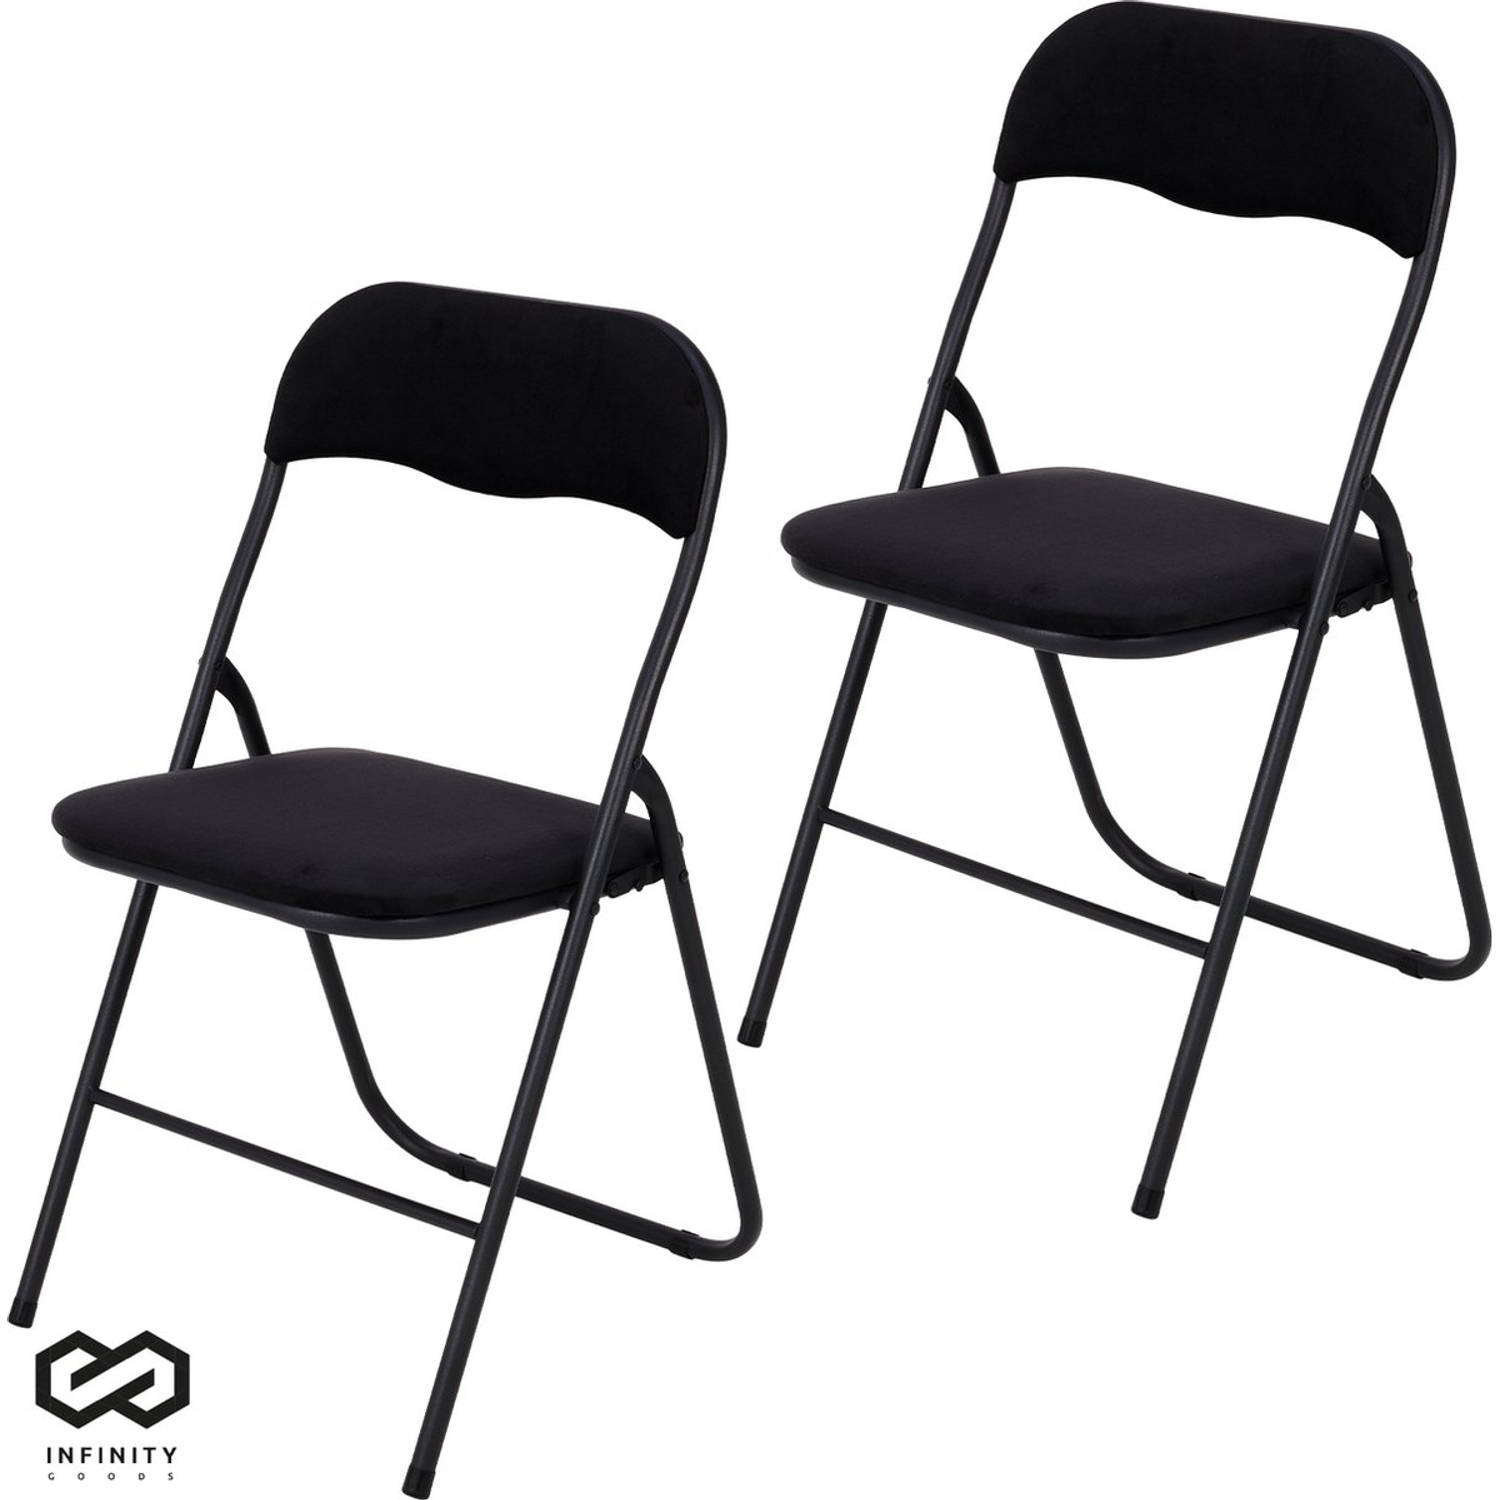 Infinity Goods Klapstoelen - Set van 2 - Vouwstoelen - Fluweel - Eettafelstoelen - Opklapbare Stoelen - 43 x 47 x 80 CM - Stoelen - Zwart